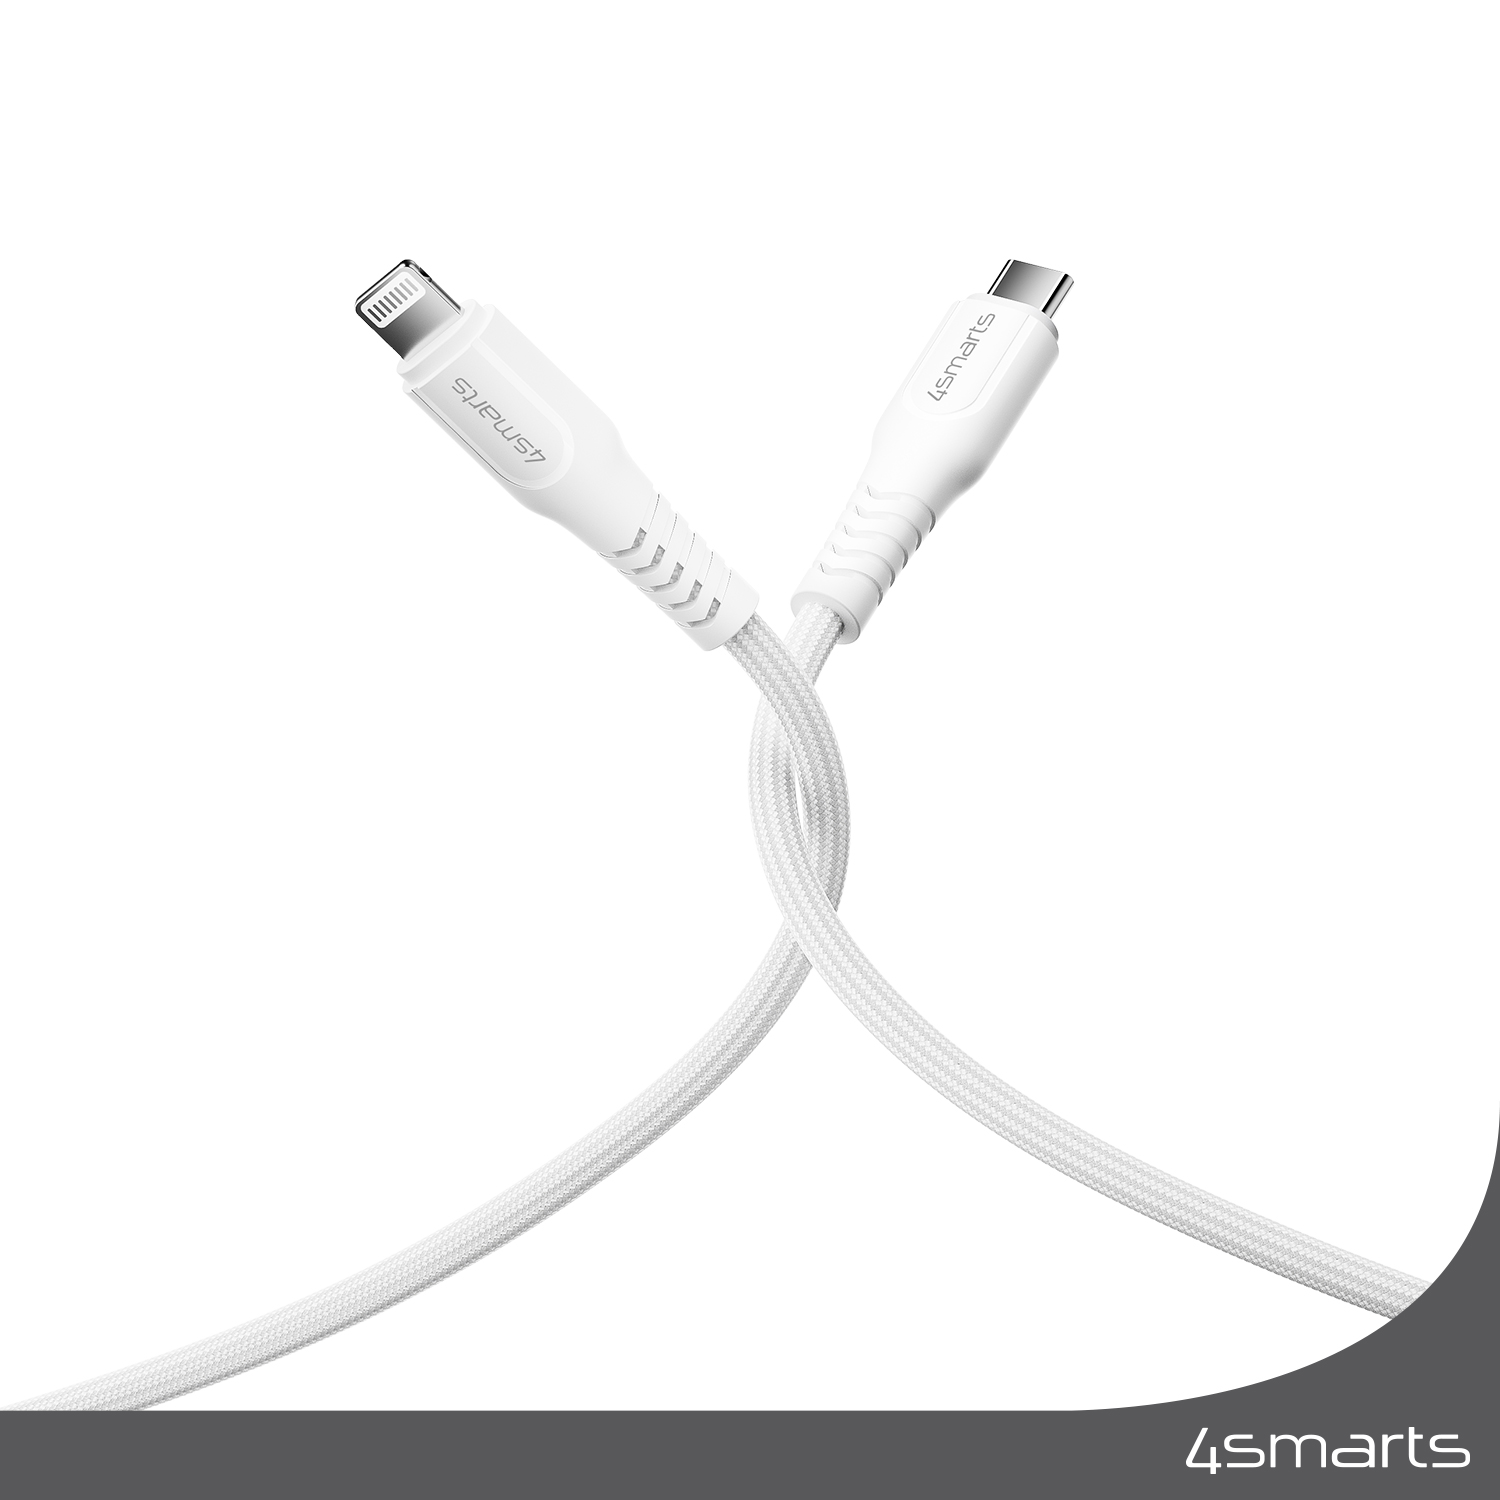 Das 4smarts USB-C auf Lightning Kabel RapidCord PD 30W wurde extra für Apple Geräte hergestellt und optimiert.